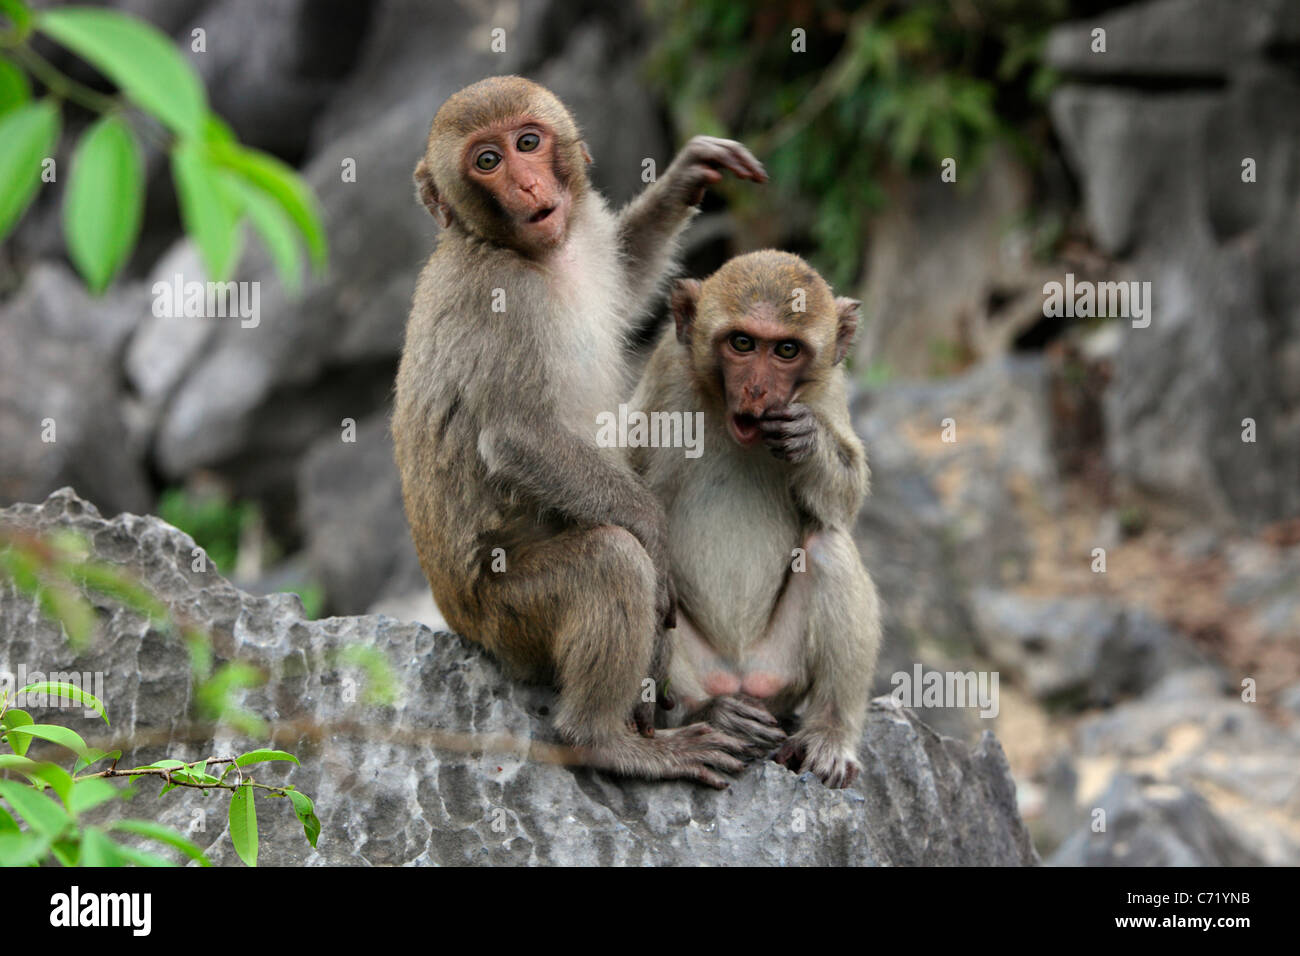 Monkey Island Monkeys- Macaques Stock Photo